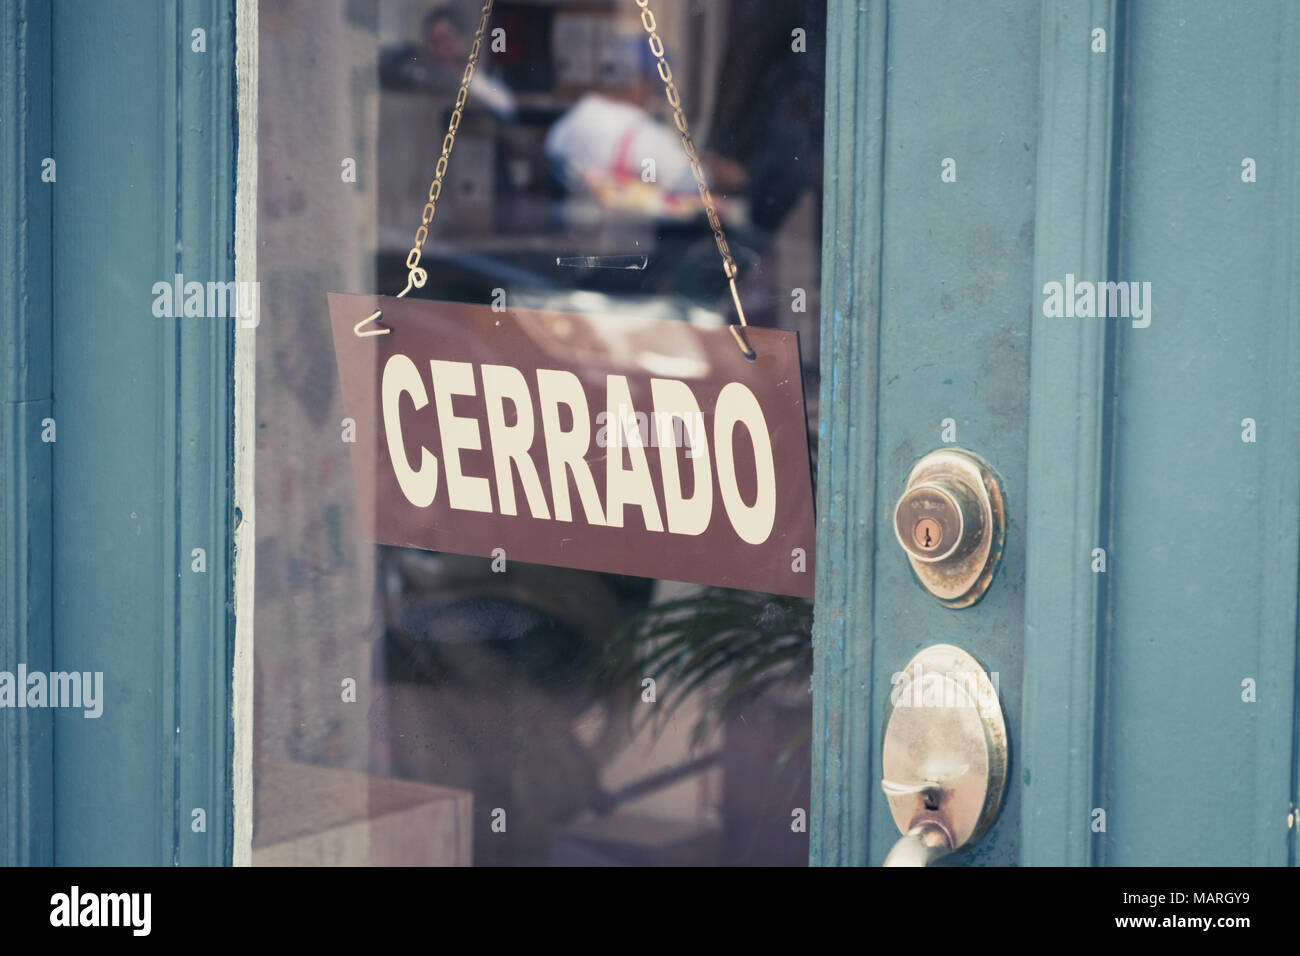 Cerrado (geschlossen) Schild an der Tür - Spanisch Wort "Cerrado" (Geschlossen) auf Shop Eingang Stockfoto